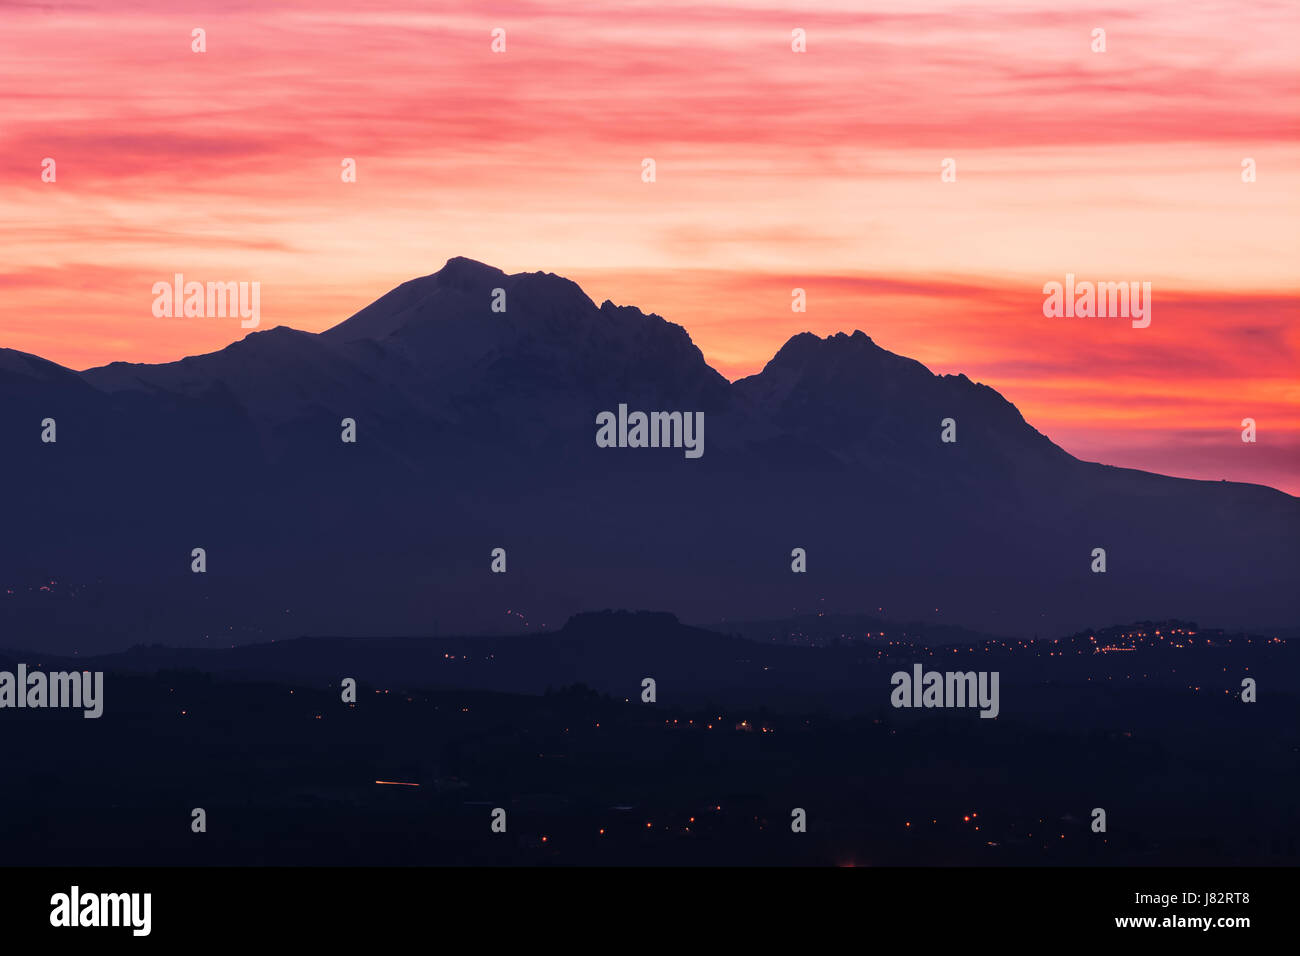 Silhouette del Gran Sasso in Abruzzo al tramonto che assomiglia al profilo della Bella Addormentata Foto Stock